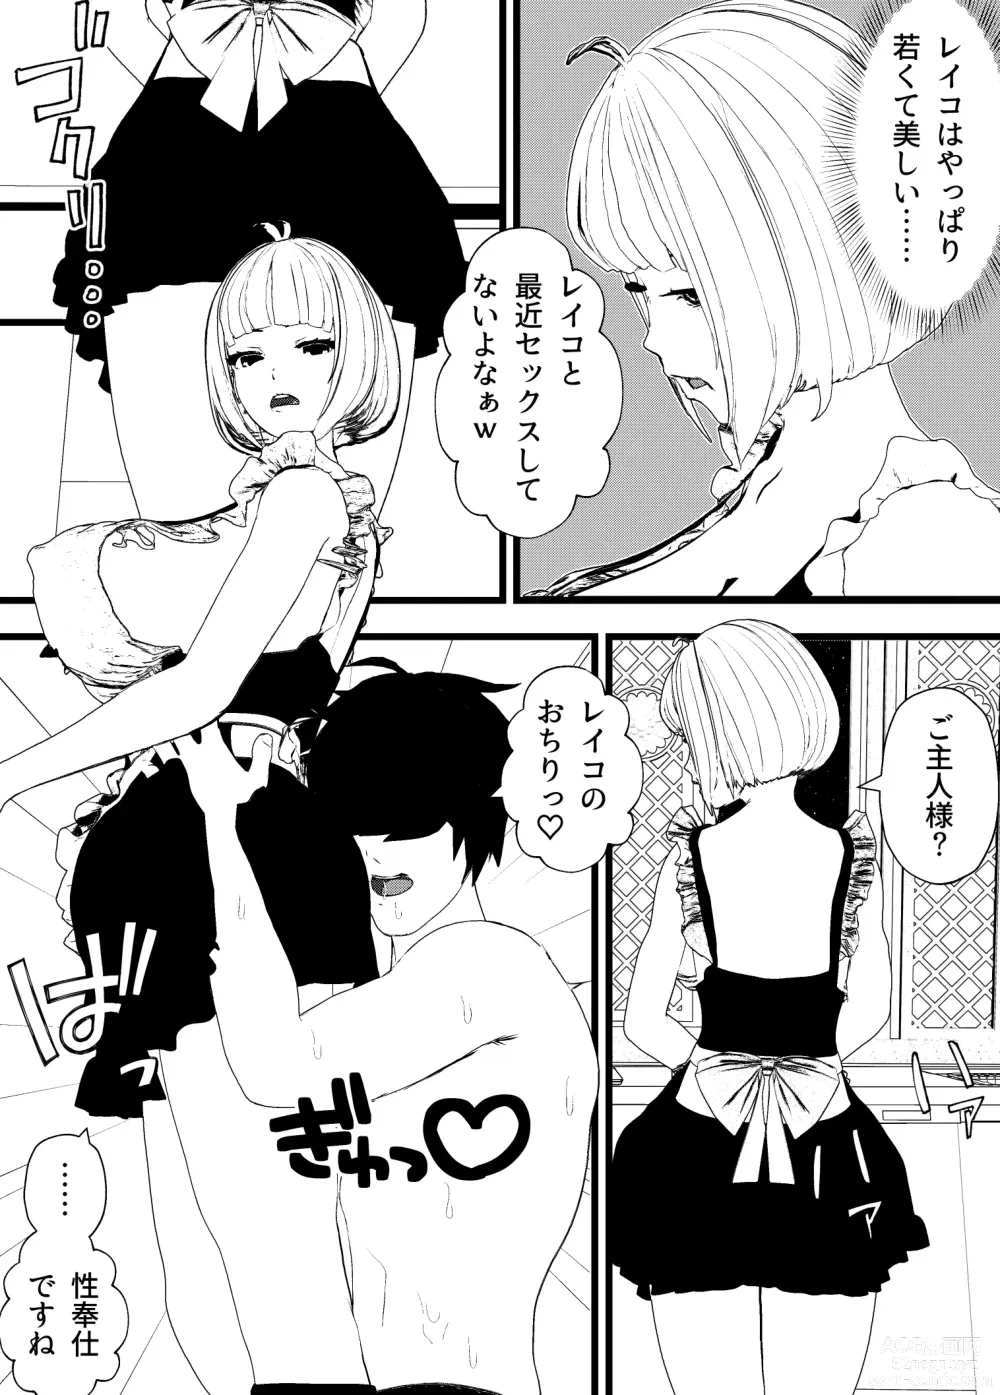 Page 7 of doujinshi Bonyuu Mama Maid to Sex Shitetara Cool Beauty Musume-chan Maid mo Ninshin Hakkaku Botehara Sex w